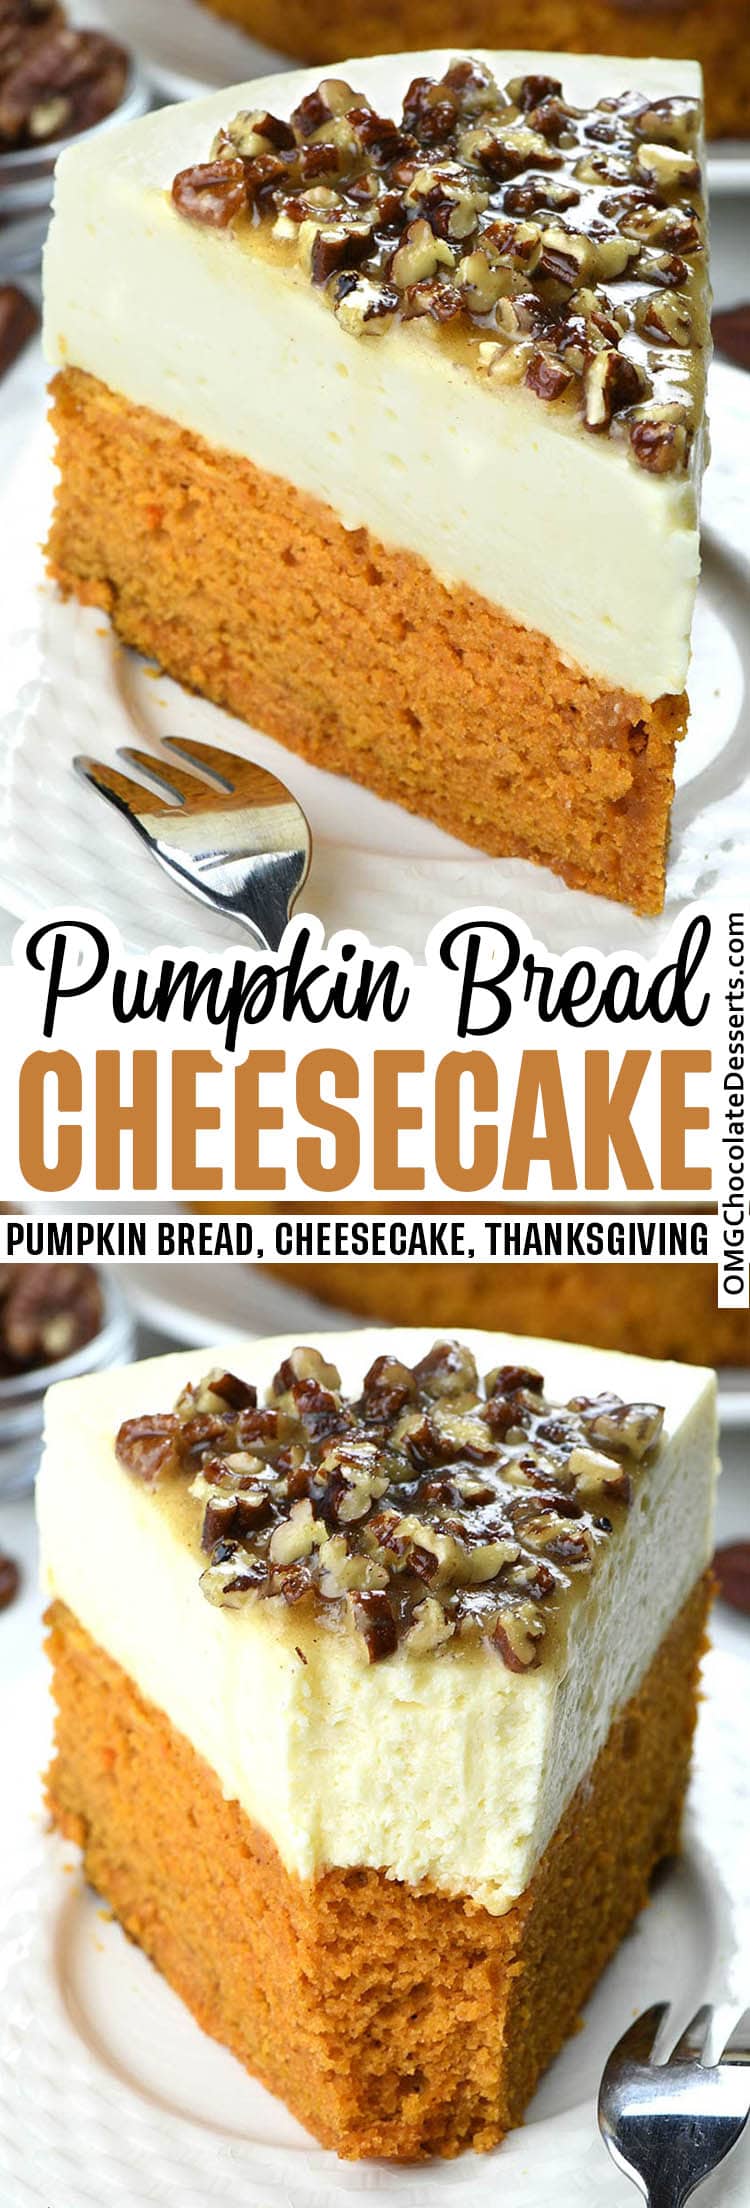 Pumpkin Bread Cheesecake